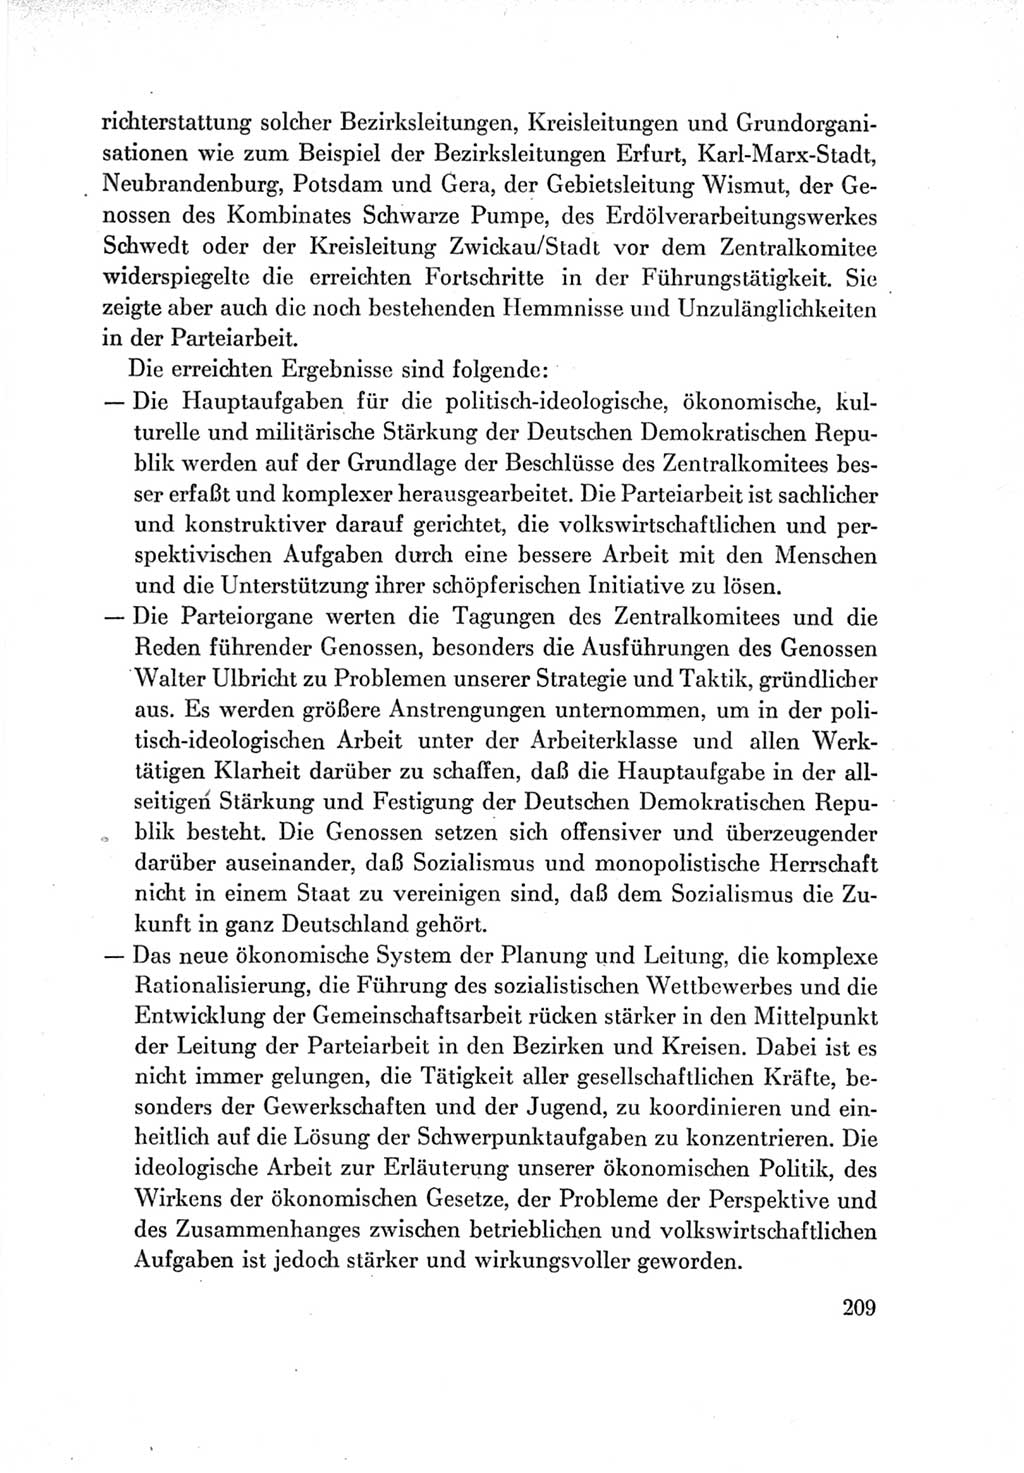 Protokoll der Verhandlungen des Ⅶ. Parteitages der Sozialistischen Einheitspartei Deutschlands (SED) [Deutsche Demokratische Republik (DDR)] 1967, Band Ⅳ, Seite 209 (Prot. Verh. Ⅶ. PT SED DDR 1967, Bd. Ⅳ, S. 209)